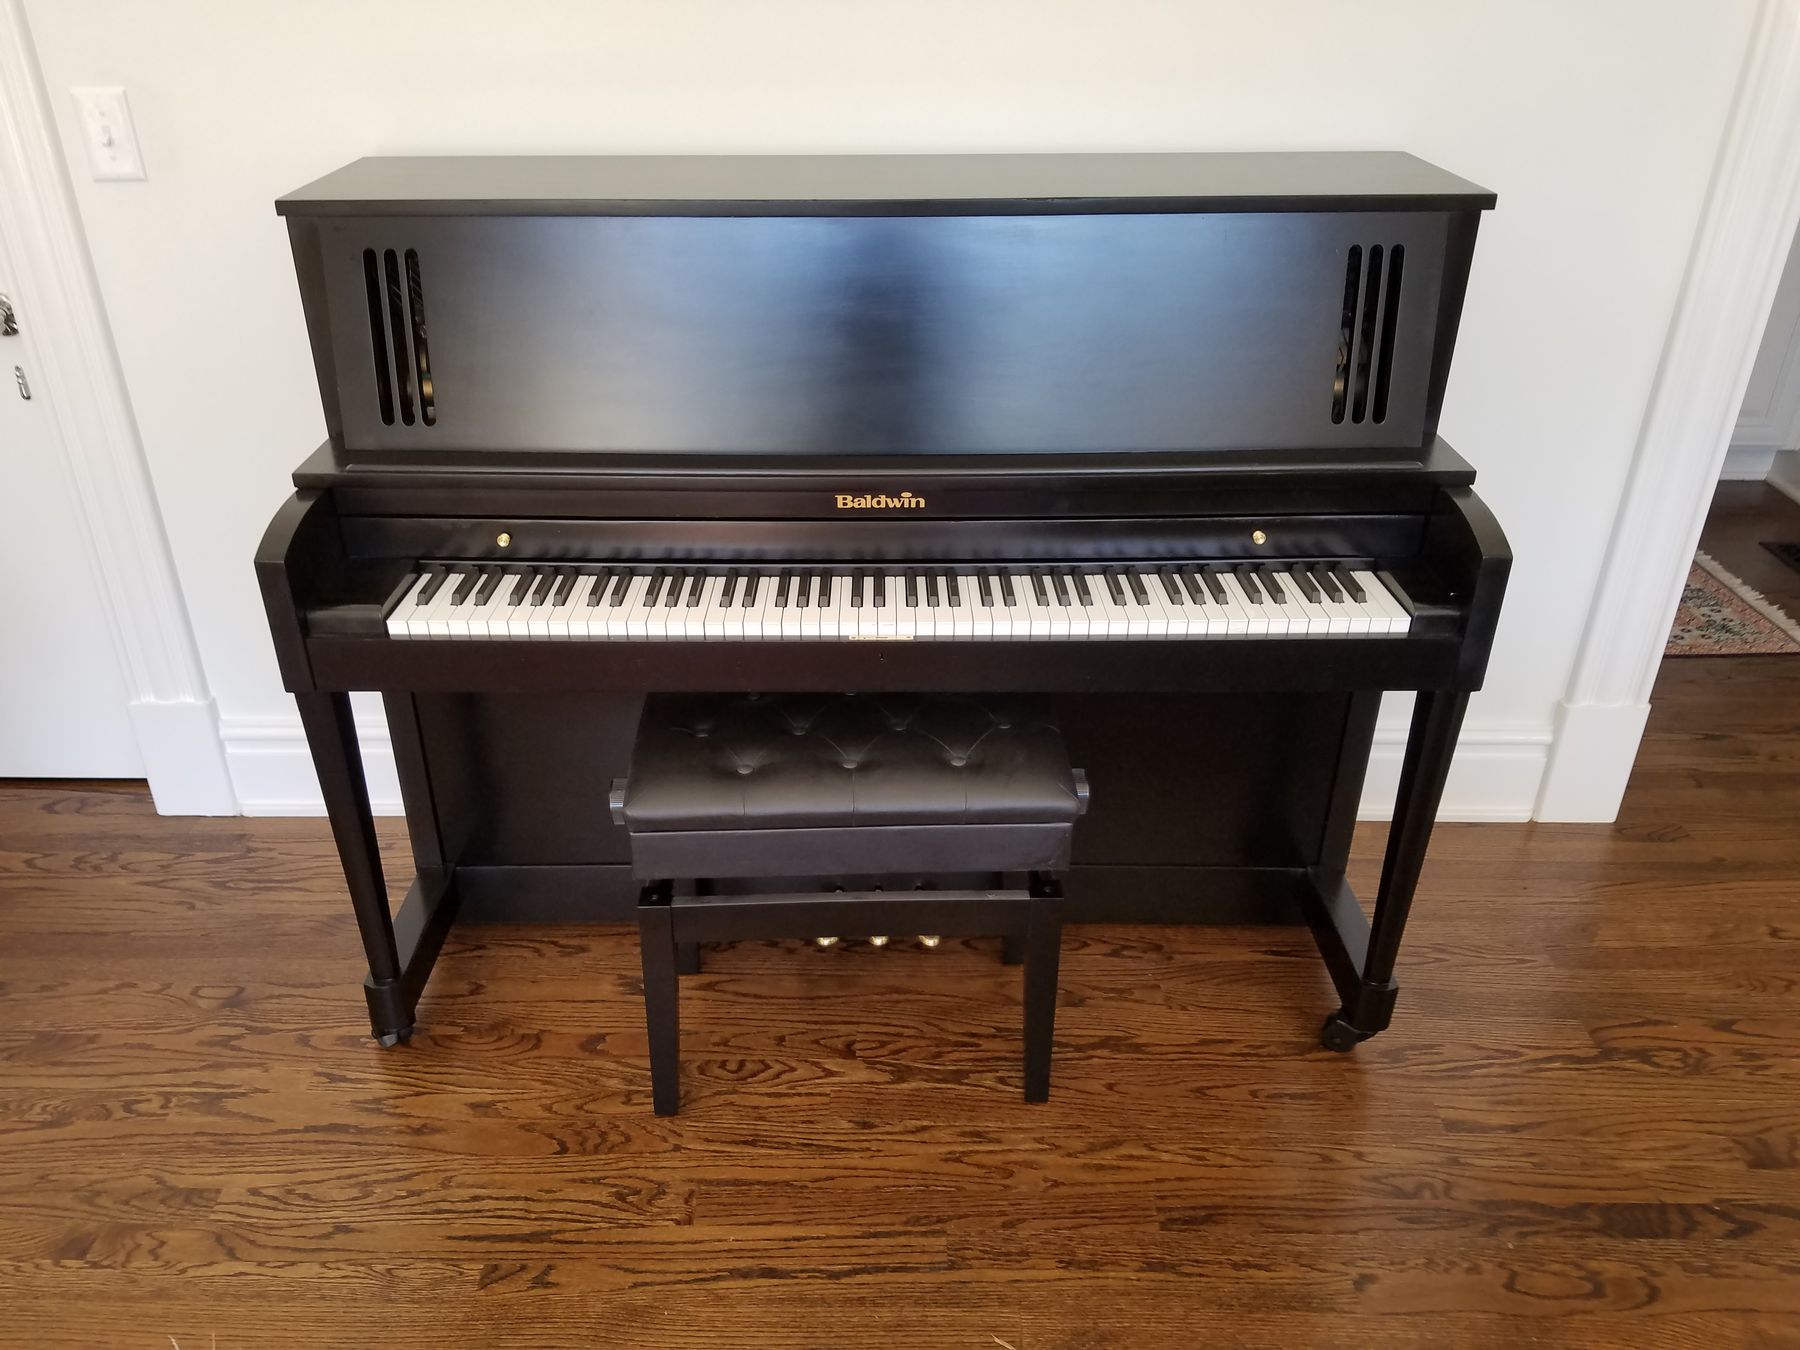 Black and Decker mini fridge - Nashville Piano Rescue